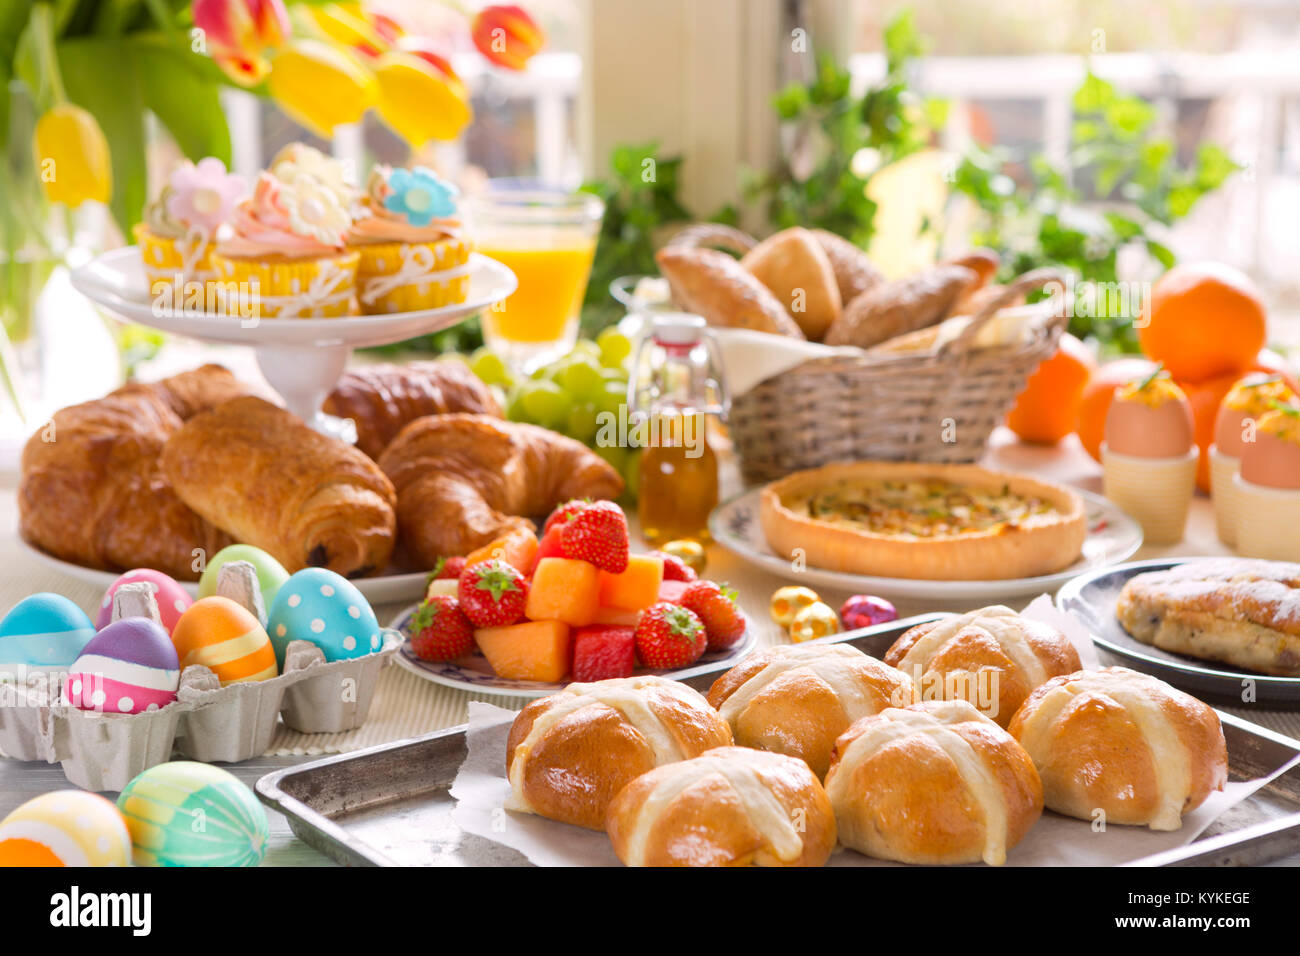 La colazione o il brunch tabella riempita con tutti i tipi di deliziosa gastronomia pronta per un pasto di Pasqua. Foto Stock